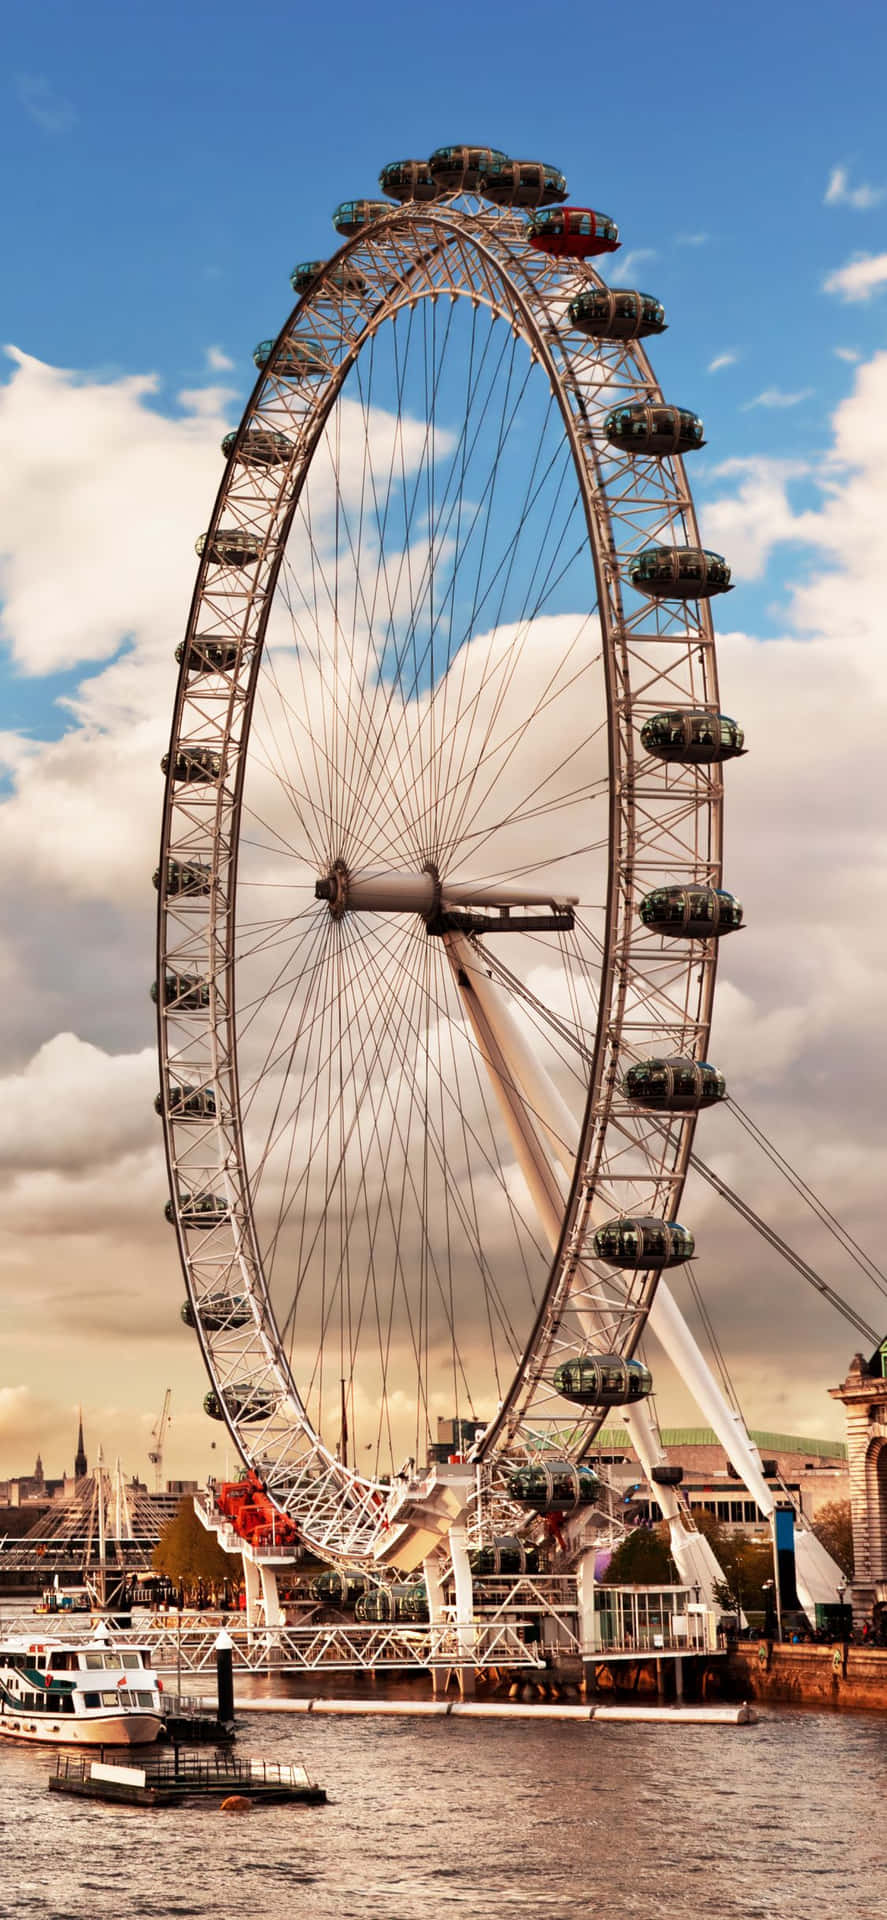 Londoneye Är Ett Känt Landmärke I London Och Erbjuder Fantastisk Utsikt. En Bild Av London Eye Ferris Wheel Skulle Göra En Vacker Bakgrund På Din Datorskärm Eller Mobil. Prova Det Idag! Wallpaper